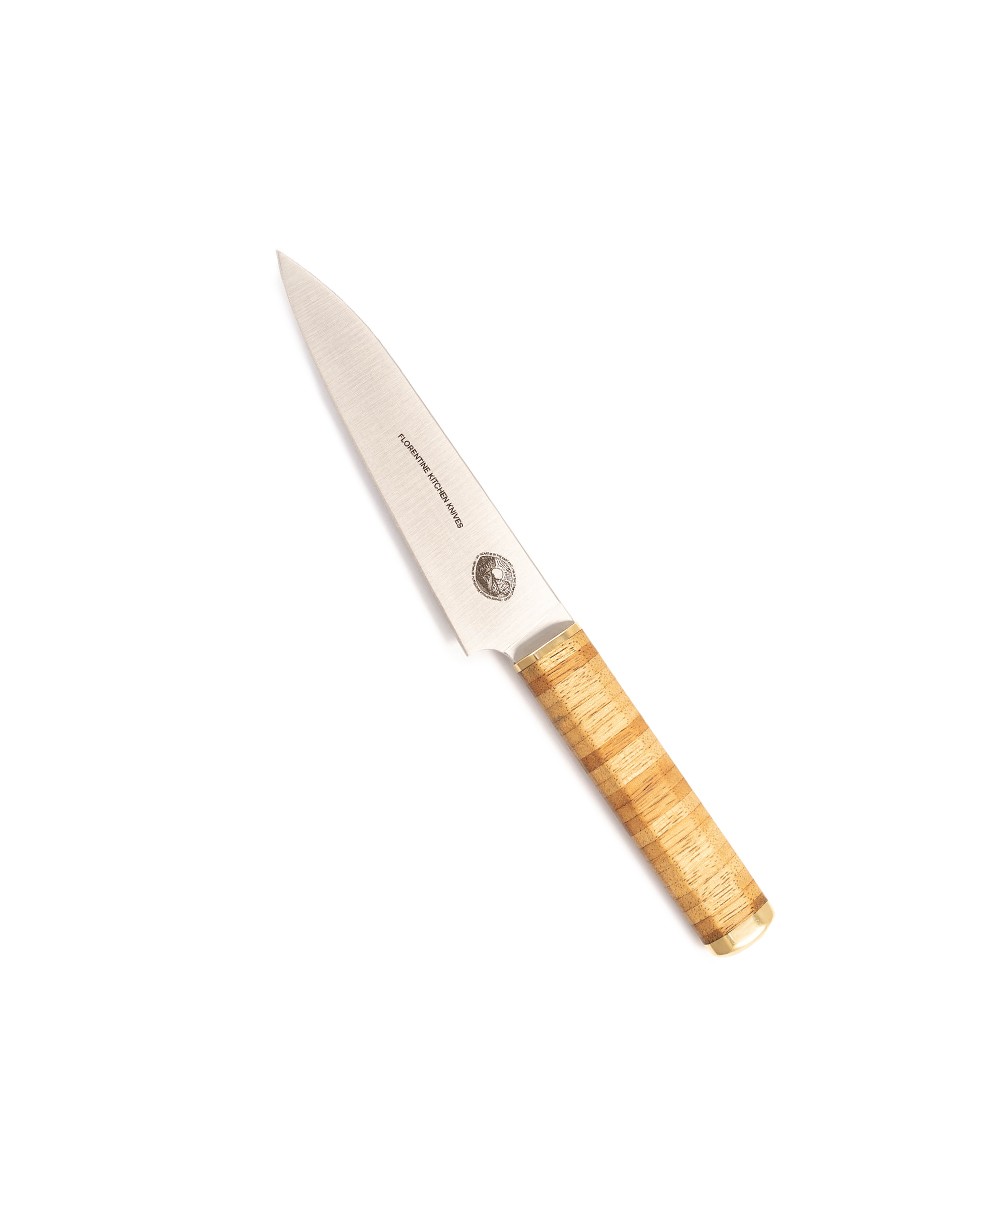 Produktbild des Kedma Petty Küchenmesser in wood von Florentine Kitchen Knives im RAUM concept store 